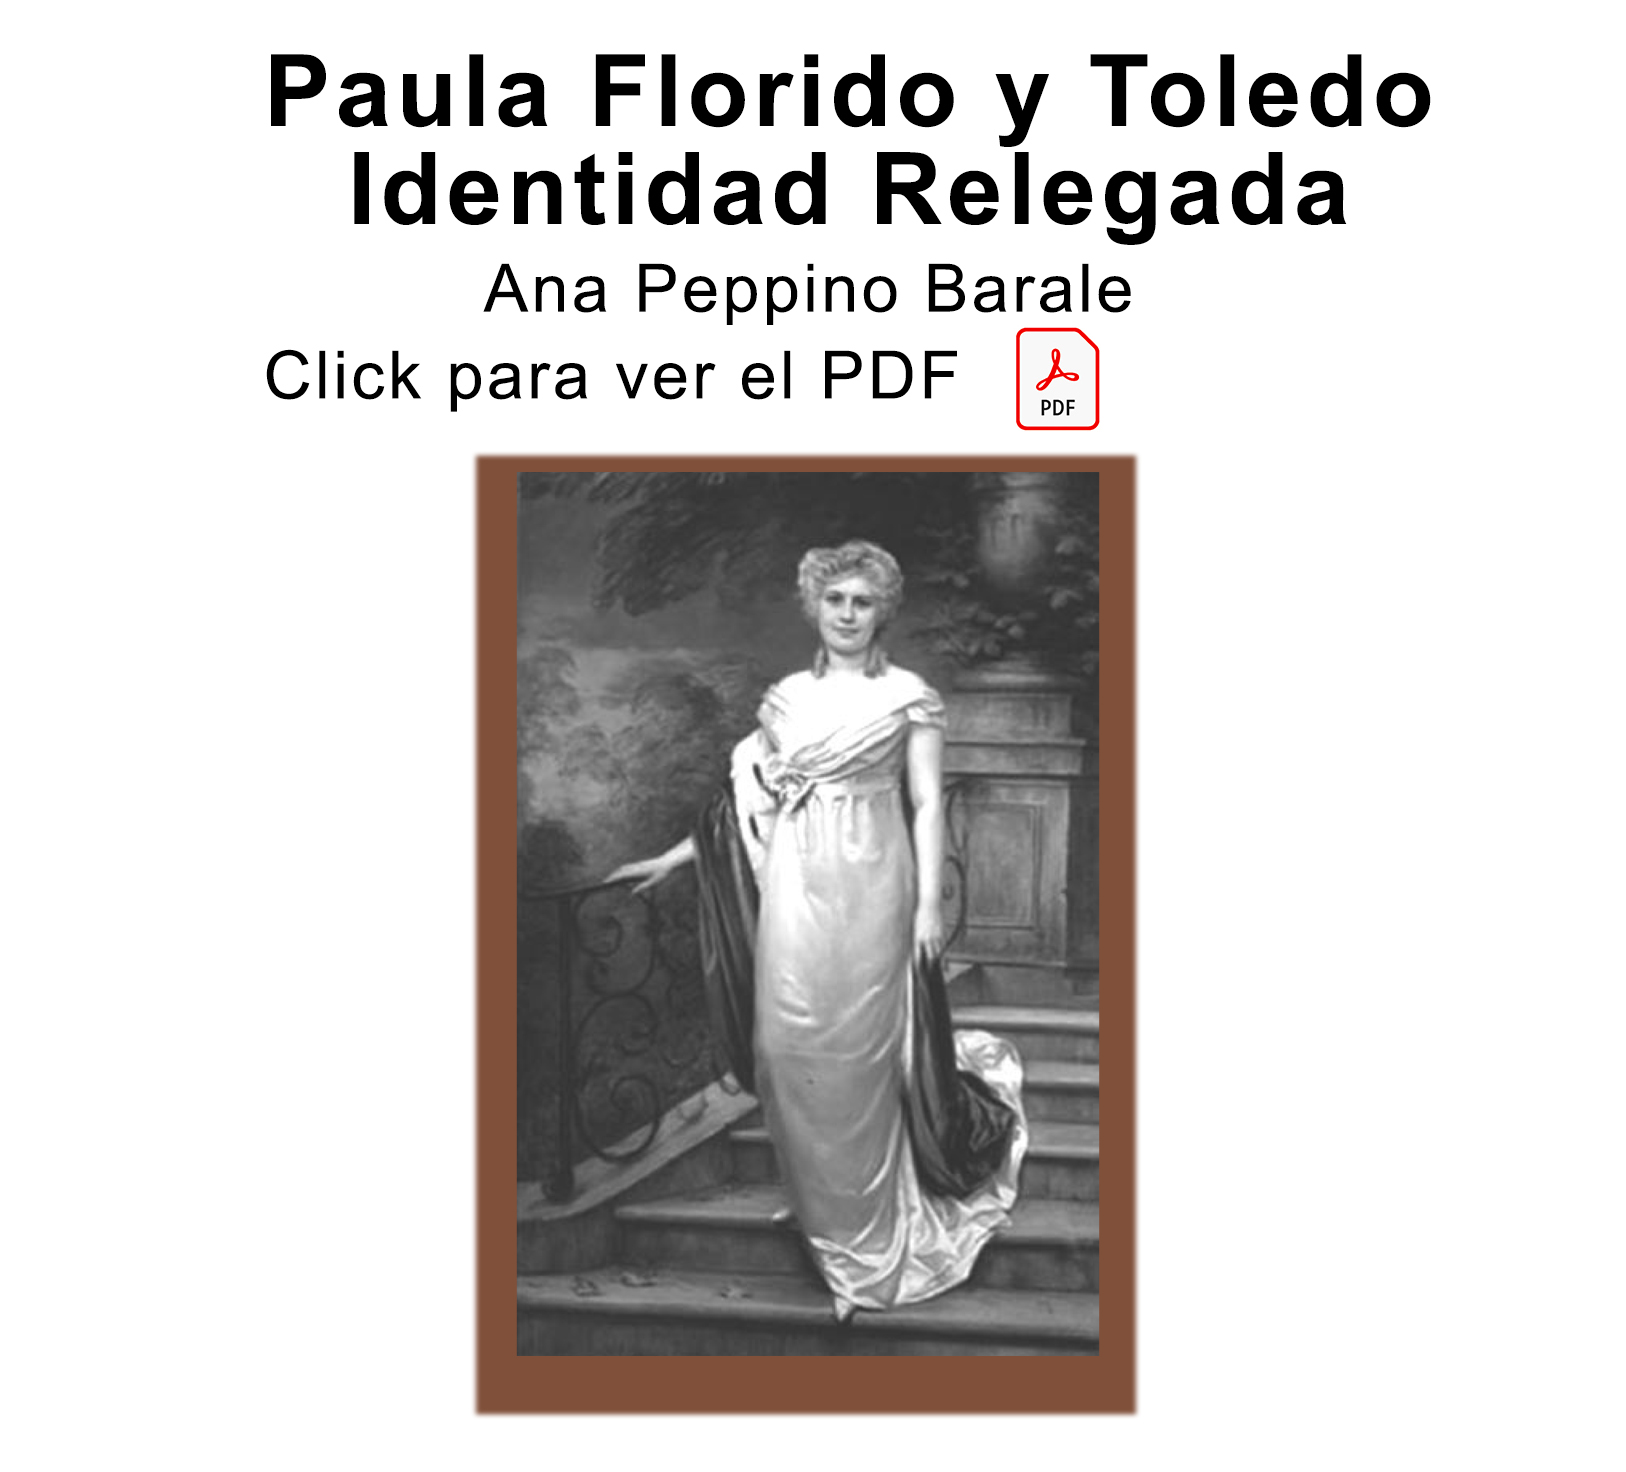 El Paula Florido y Toledo Identidad relegada. Por Ana Peppino Barale